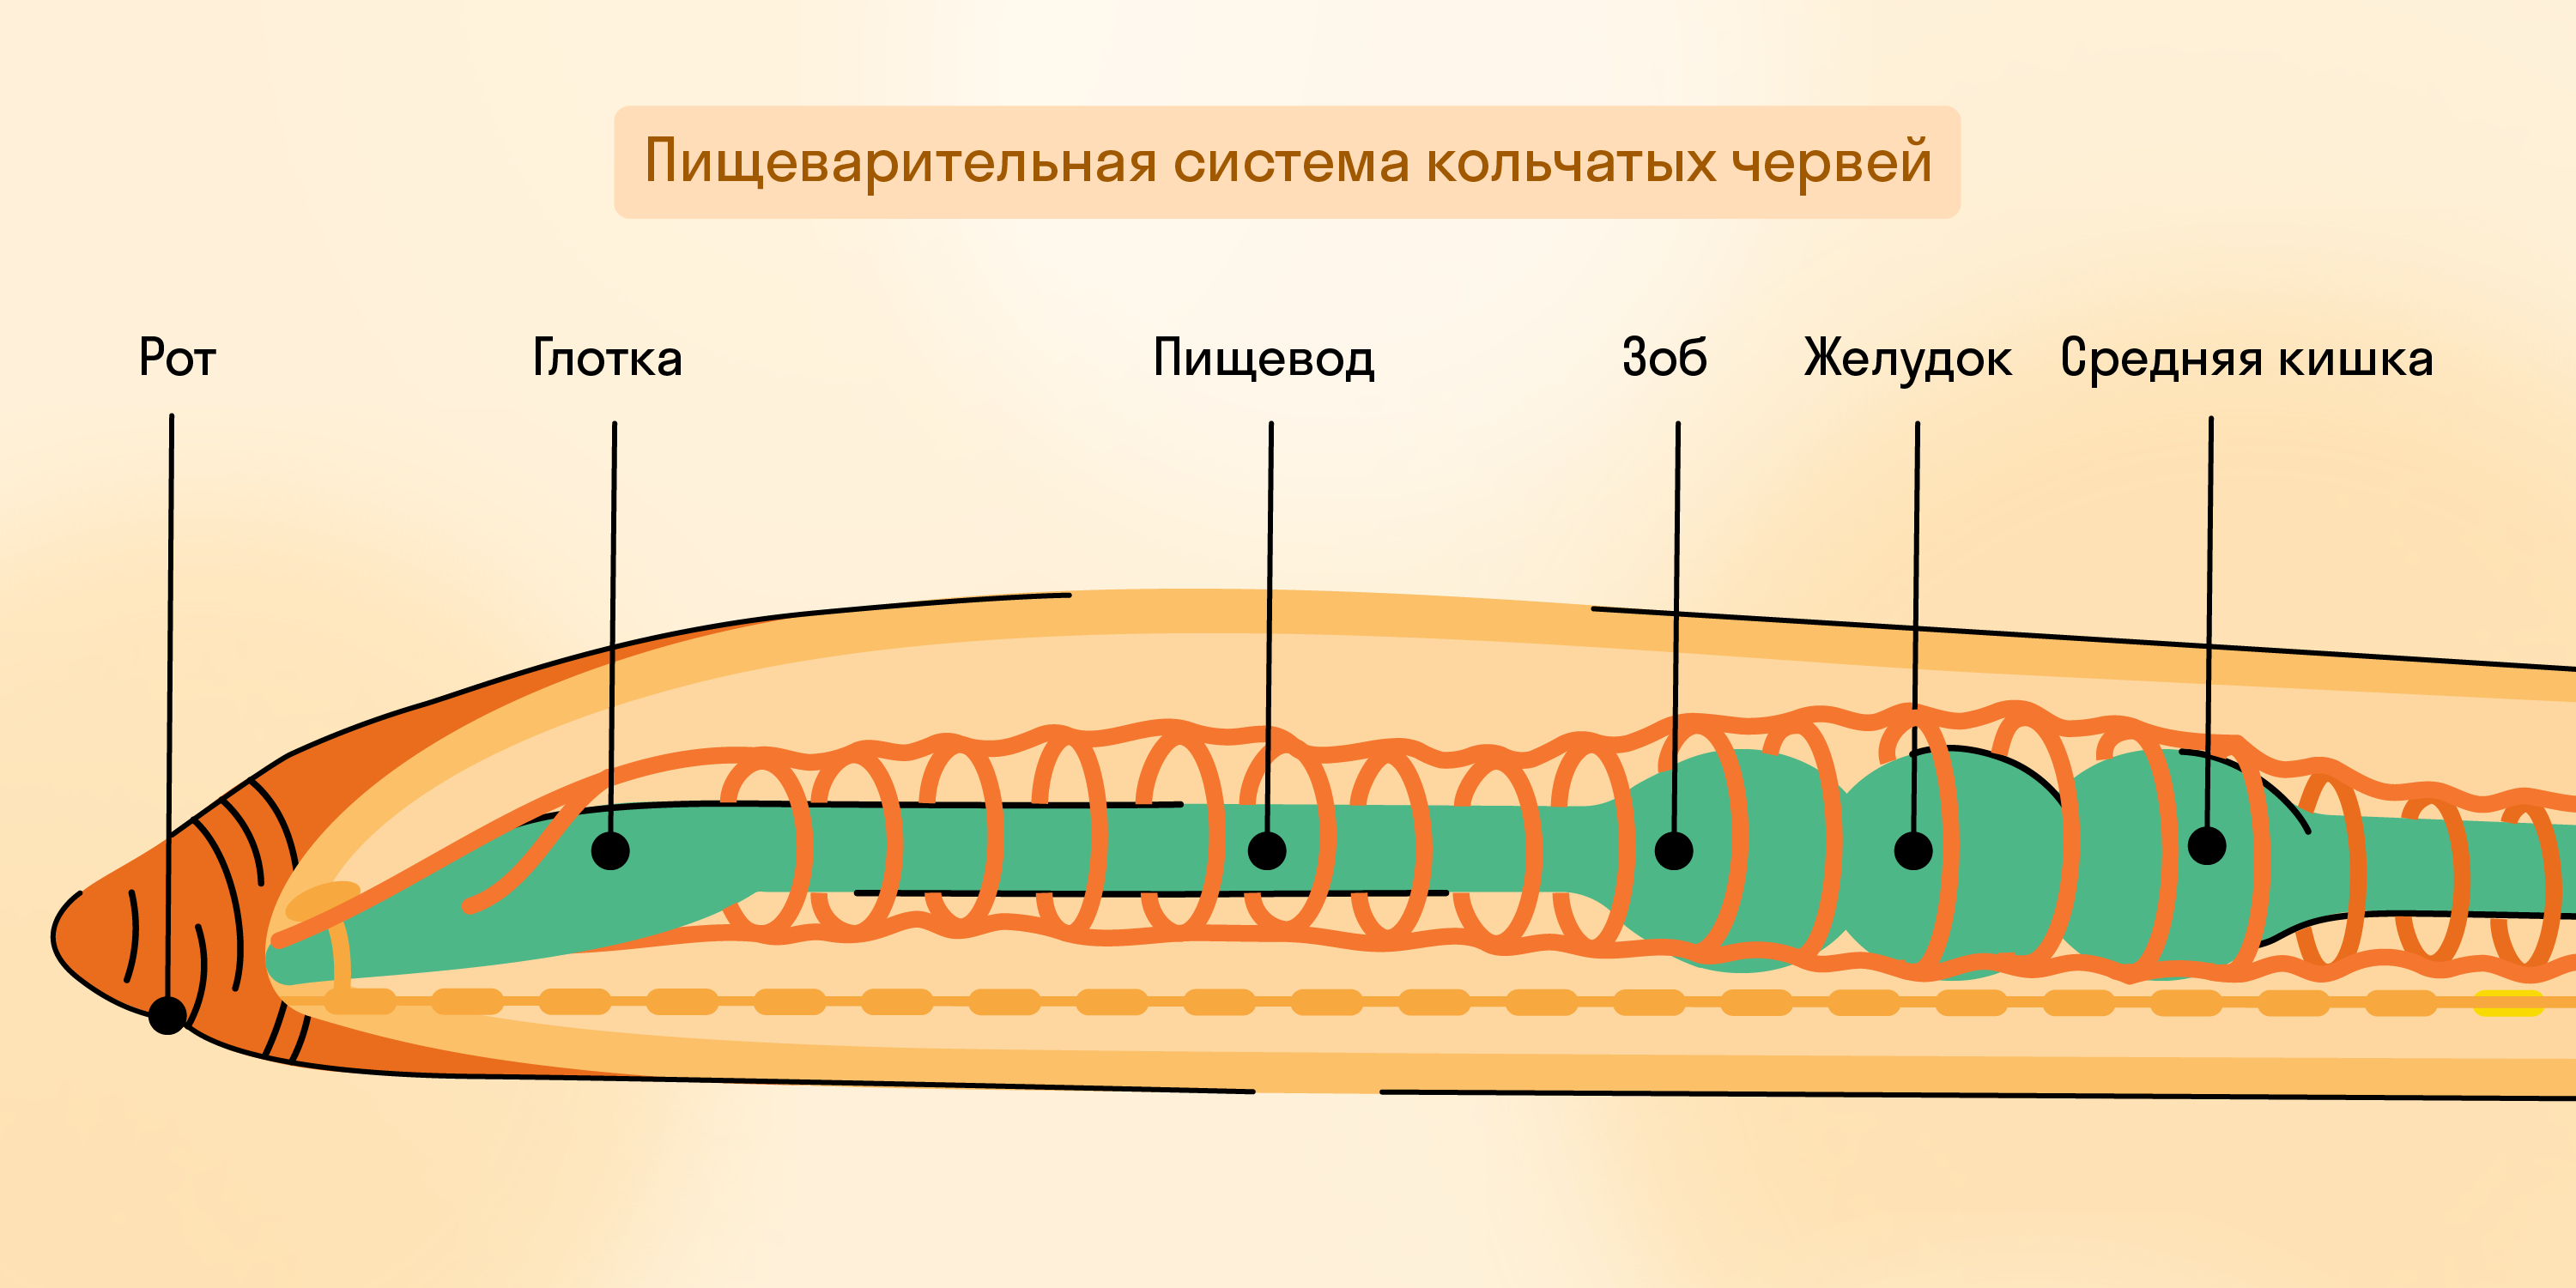 Пищеварительная система кольчатых червей